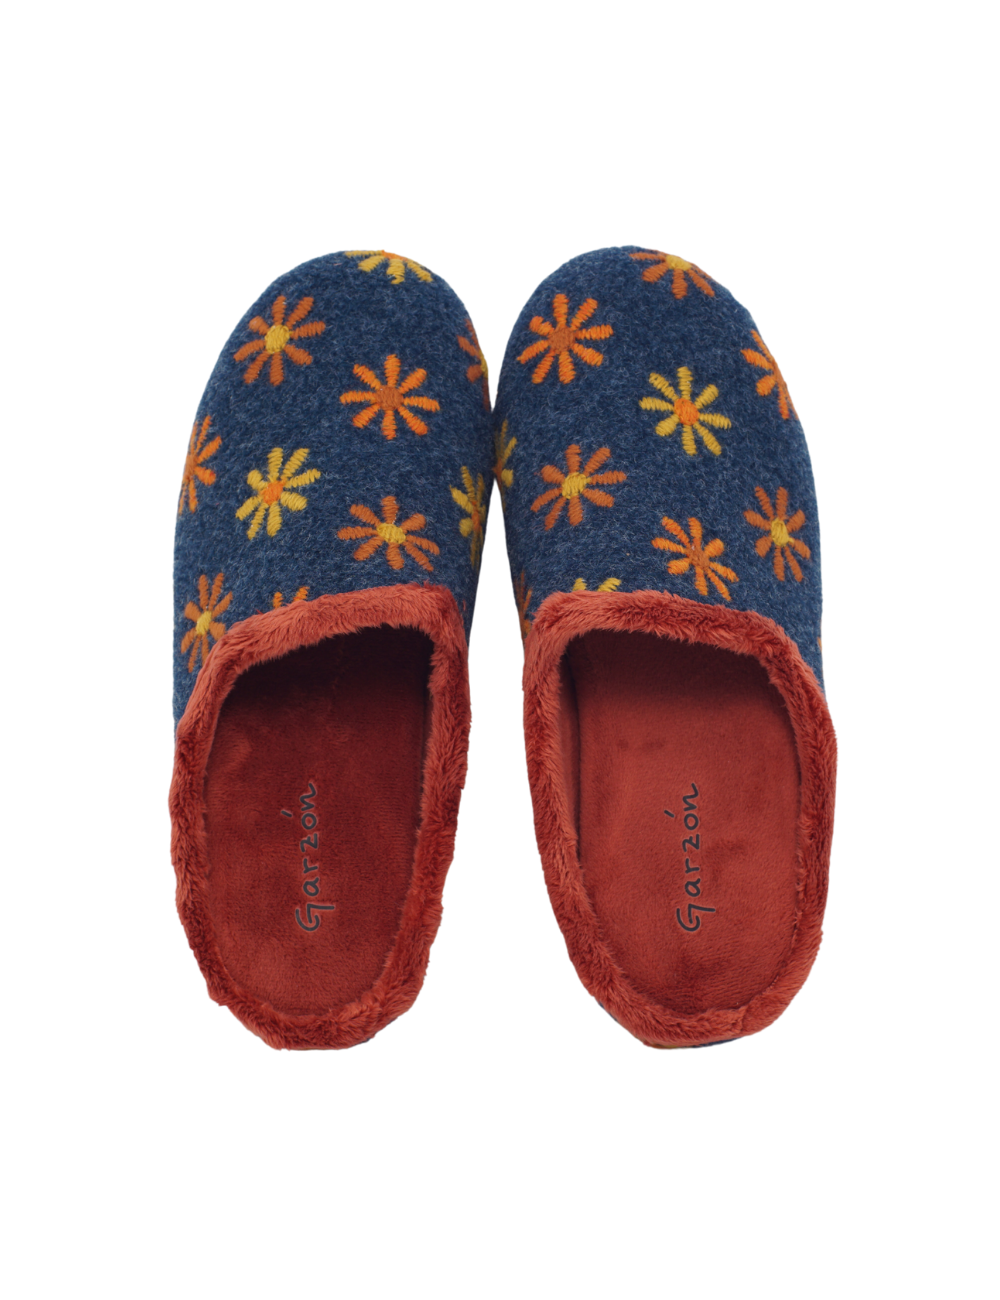 Zapatillas de casa con Ancho especial de Mujer Talla 43, comprar online